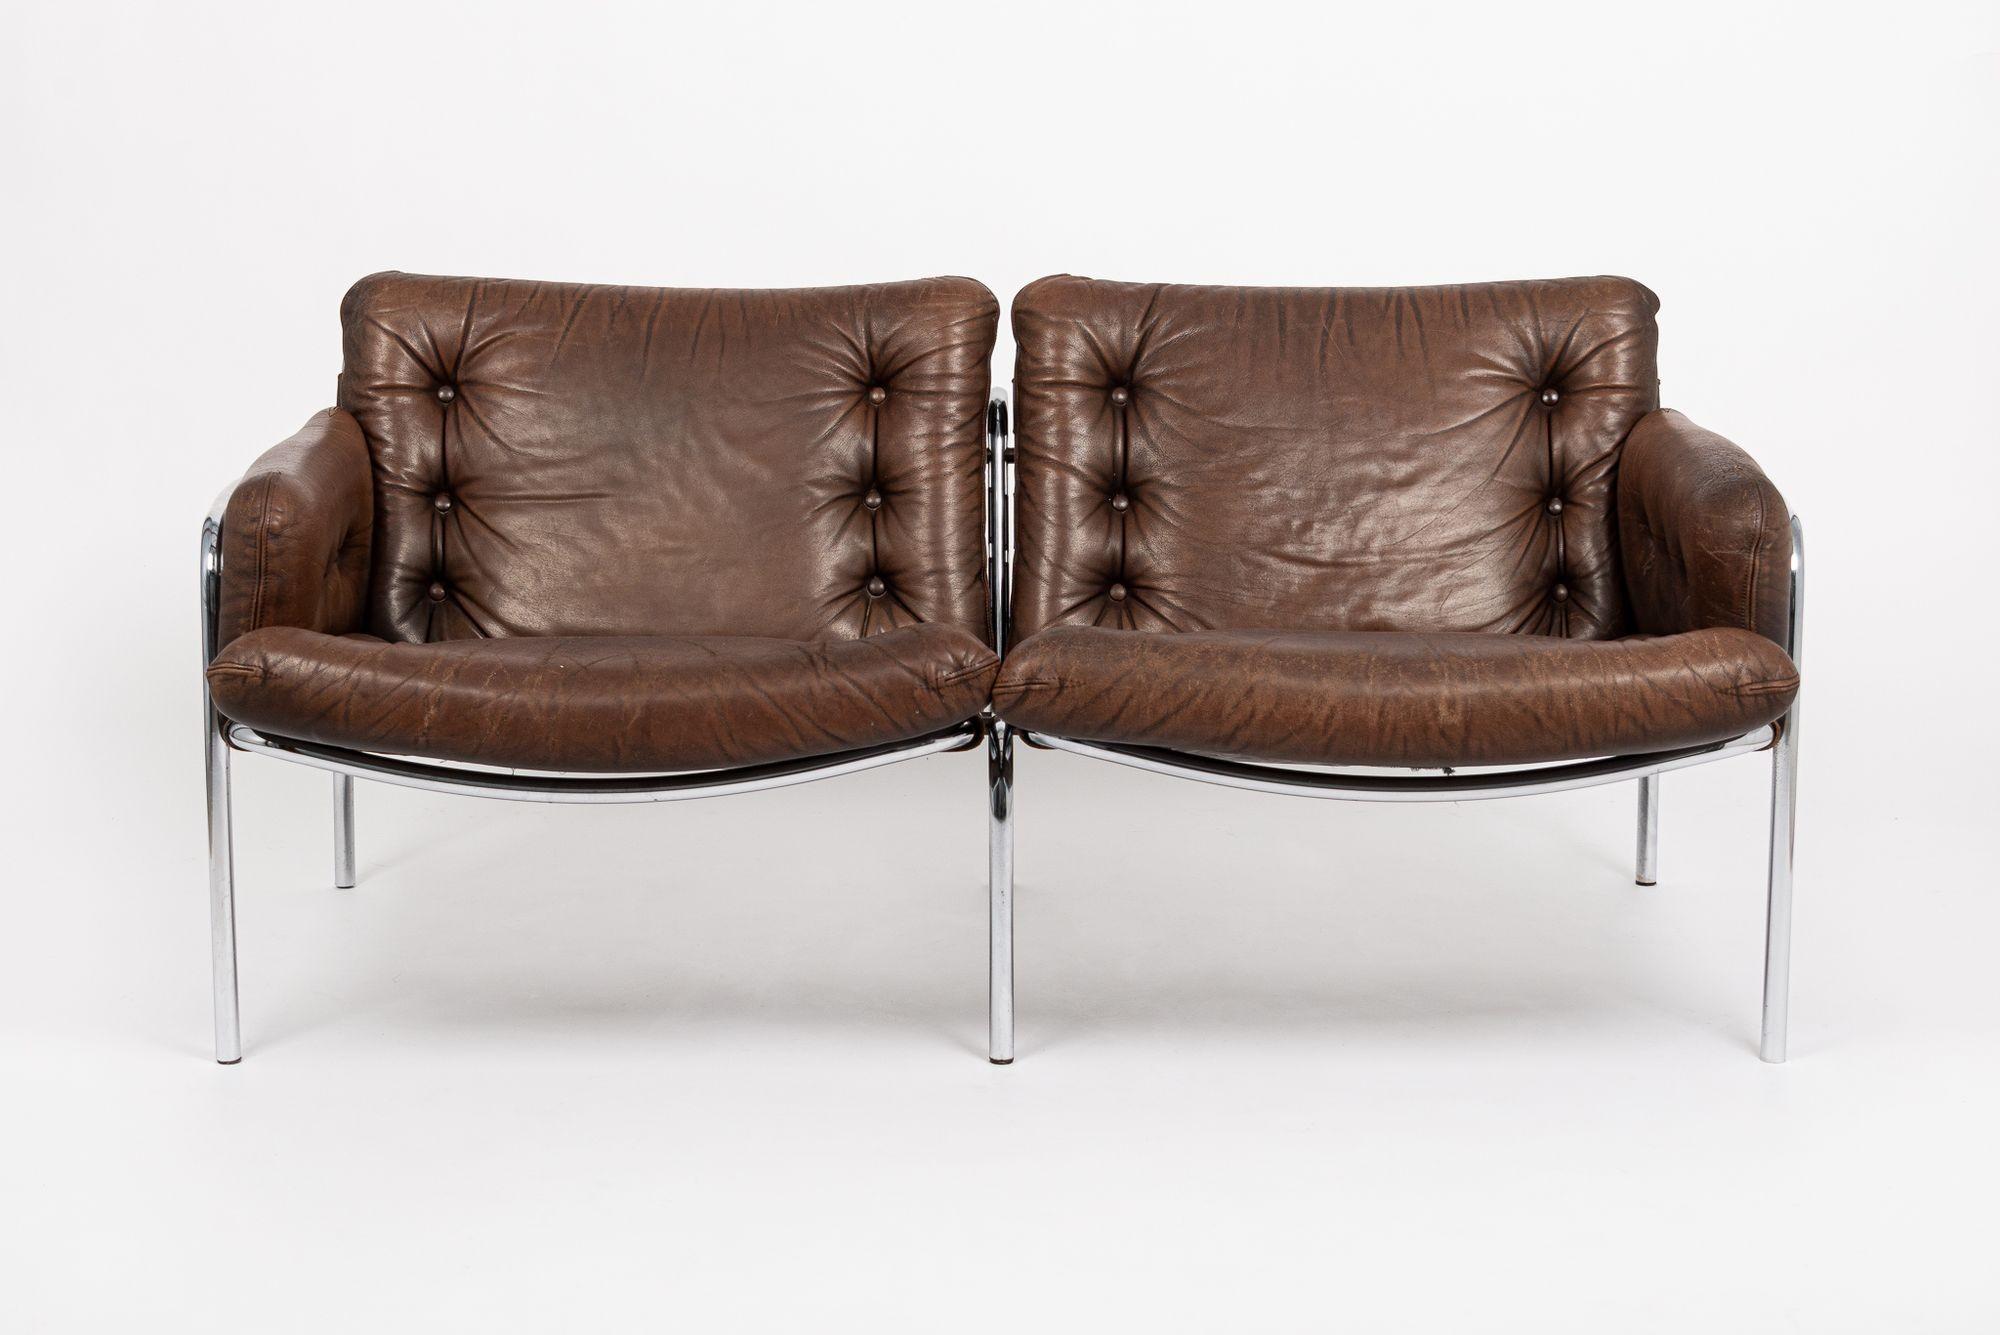 Diese unglaubliche Vintage Mitte des Jahrhunderts moderne Loveseat Couch ist circa 1970. Das einzigartige zweisitzige Loveseat-Sofa ist robust und gut gebaut und hat einen unglaublichen Vintage-Stil mit geknöpften Sitz- und Rückenkissen aus